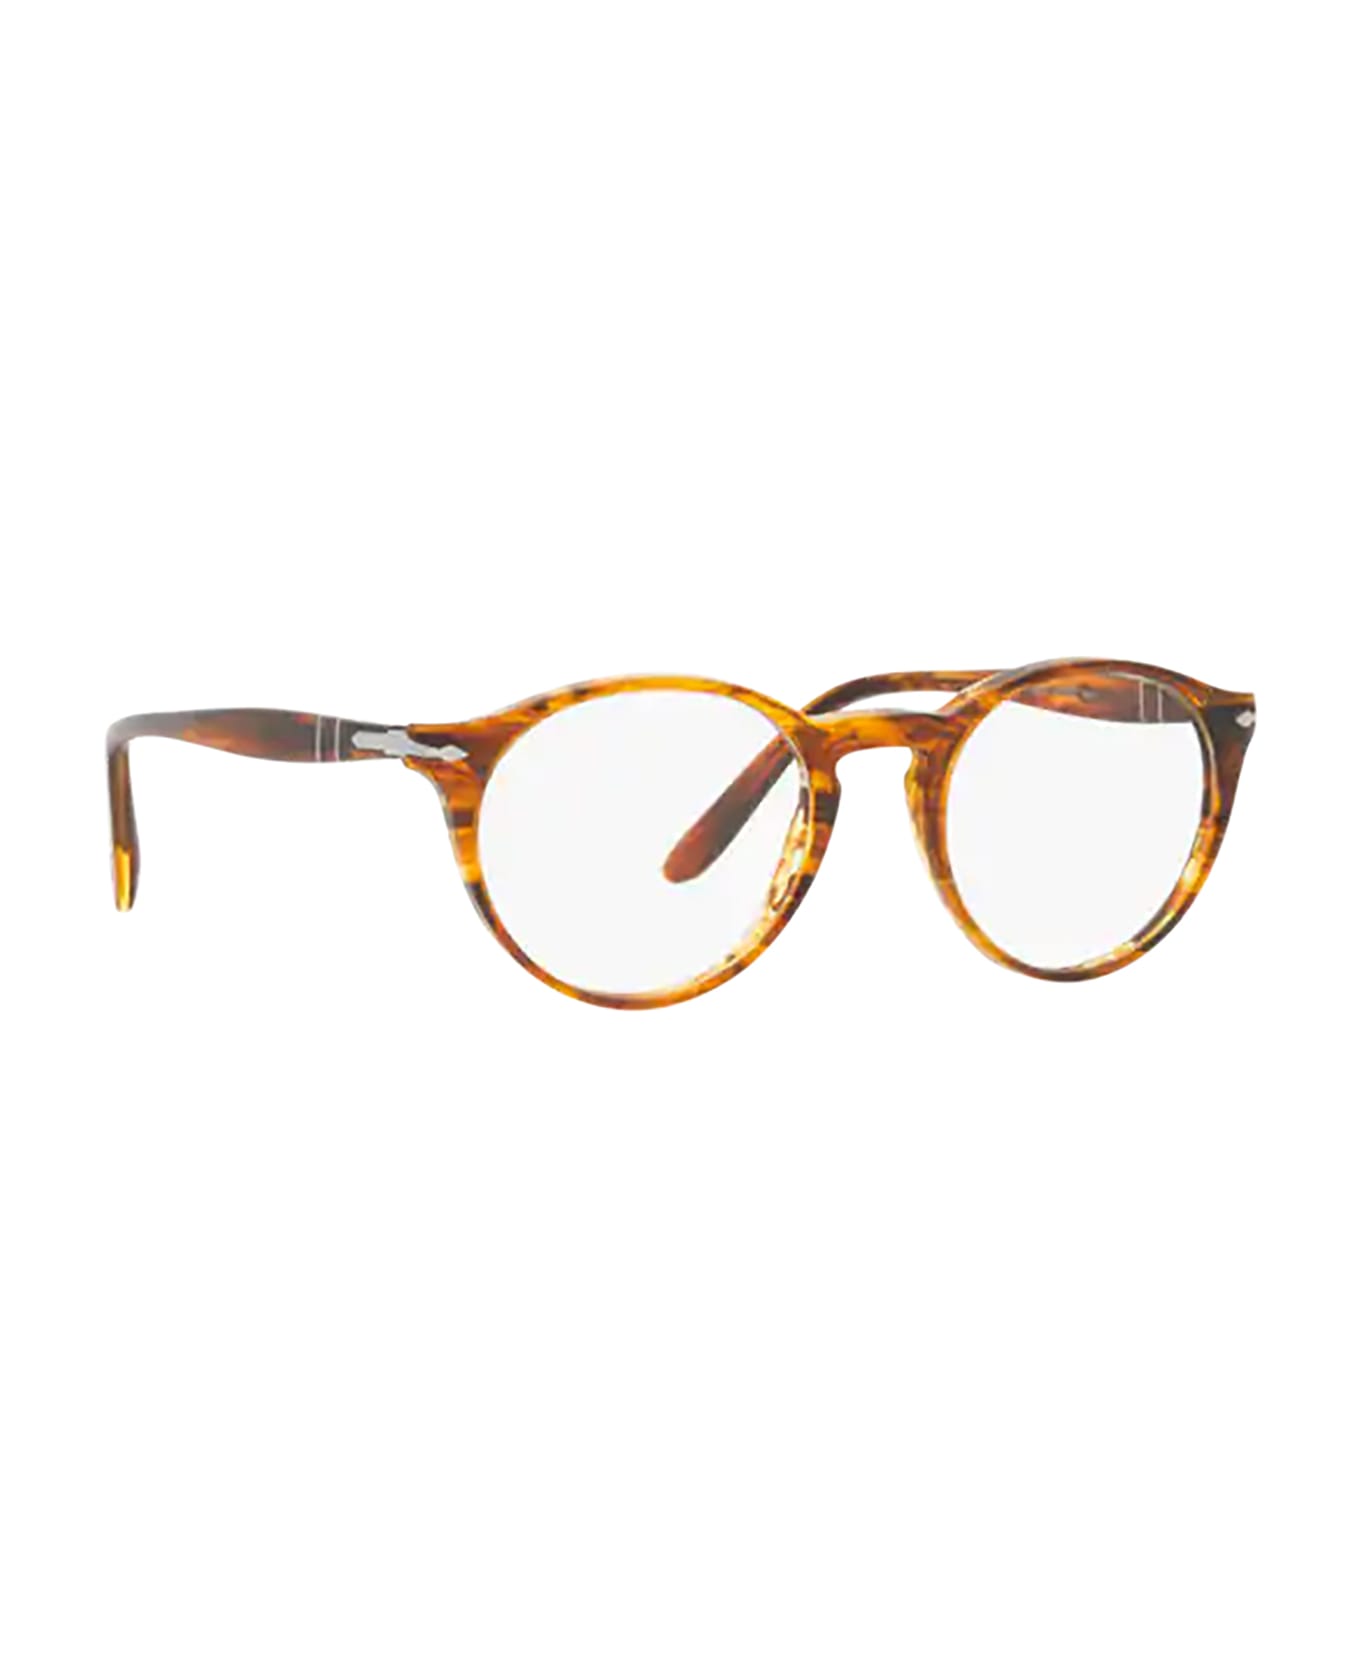 Persol Po3092v Striped Brown Glasses - Striped Brown